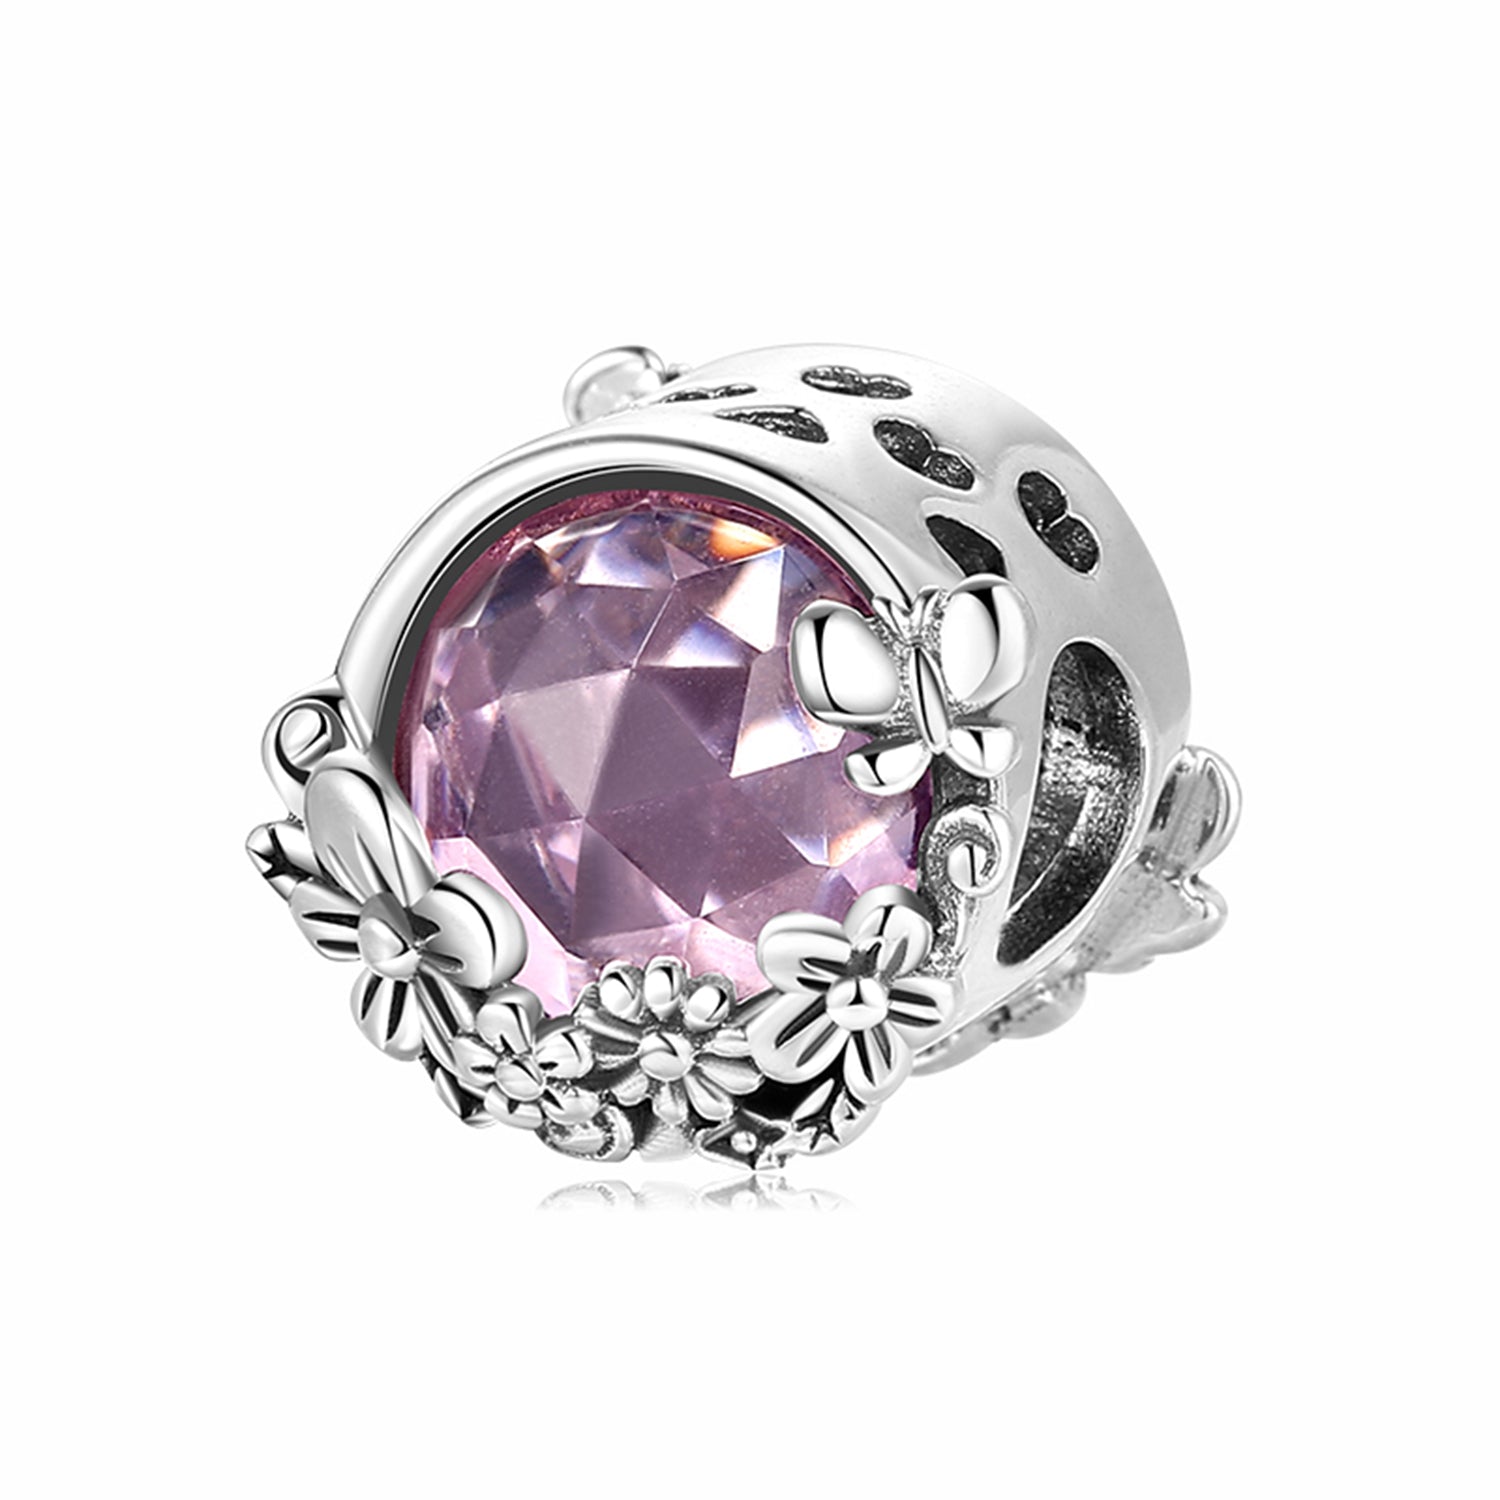 Purple diamond with flowers